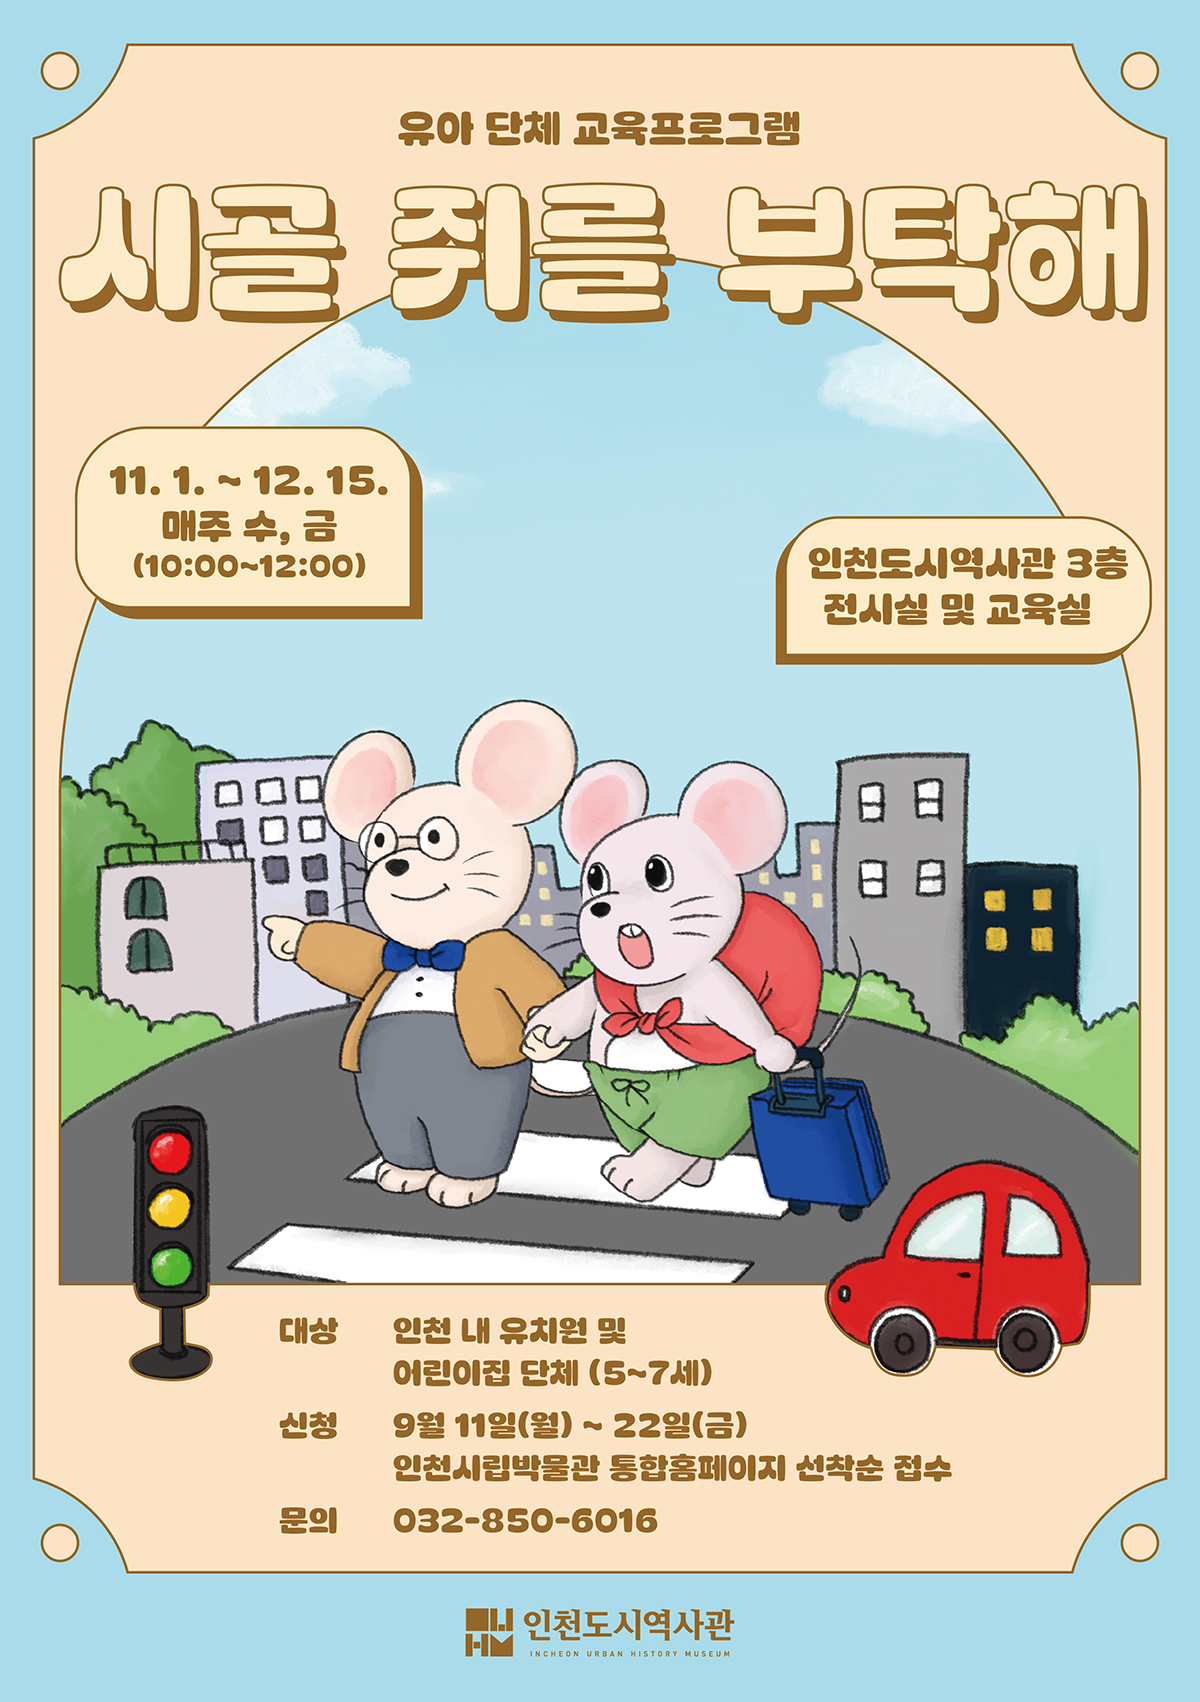 [인천도시역사관] 하반기 유아 단체 교육프로그램 <시골 쥐를 부탁해> 신청 안내